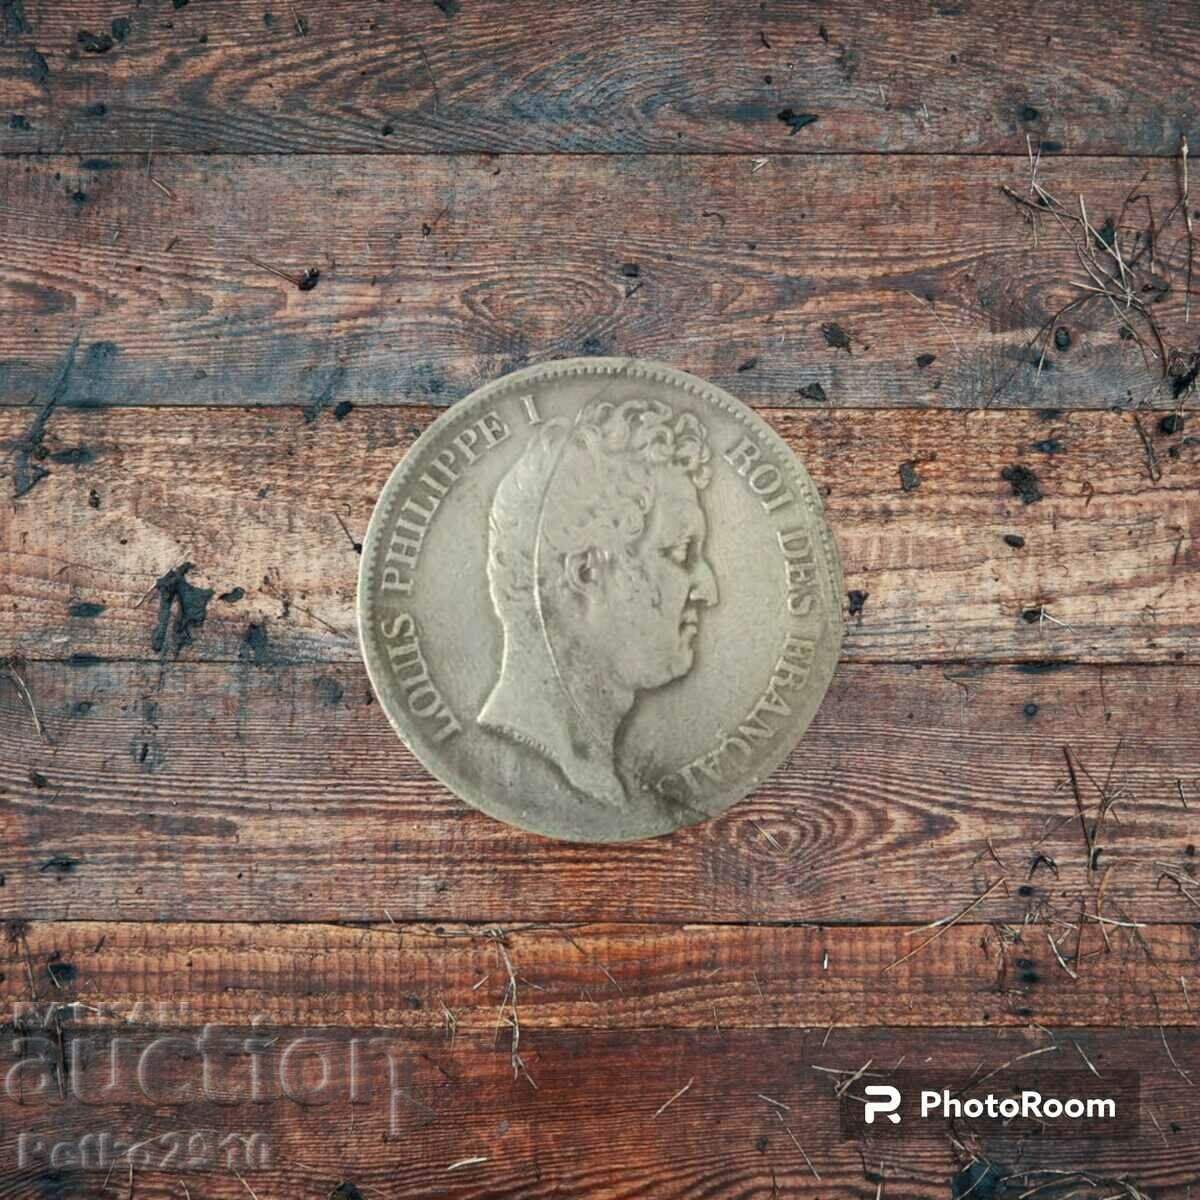 Сребърна монета 5 франка Филипе I 1831г.